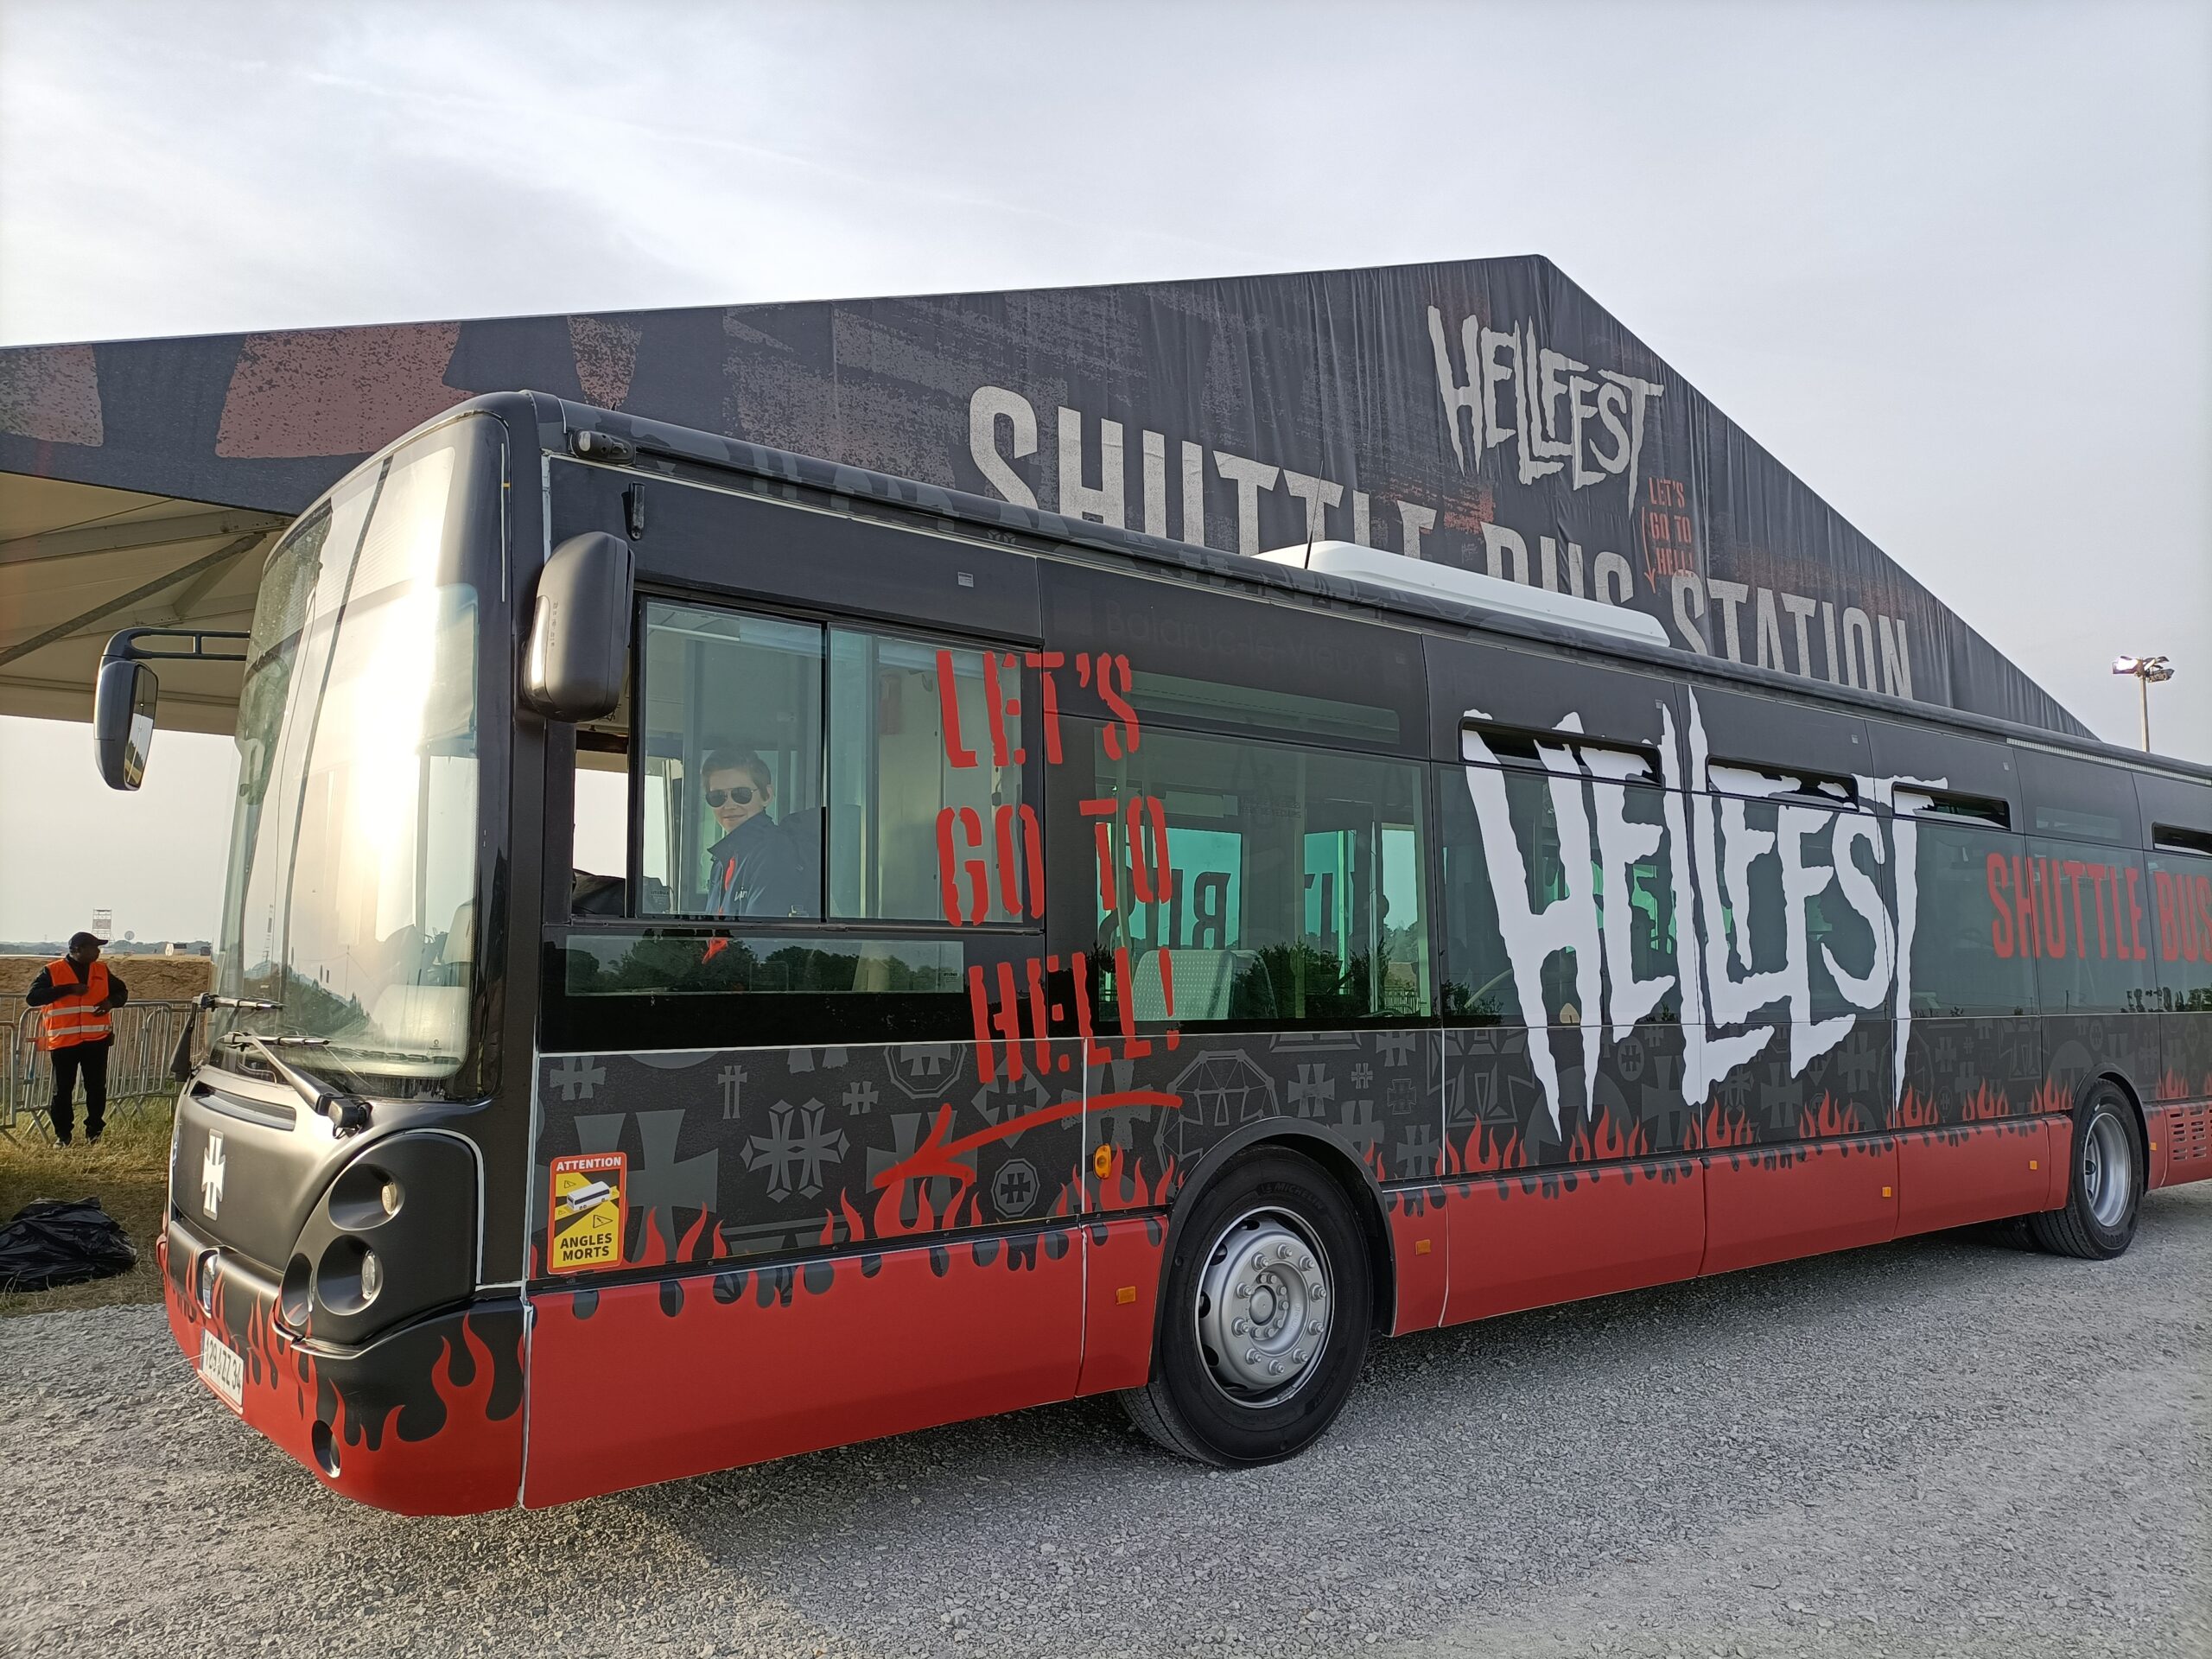 Hellfest bus 2022